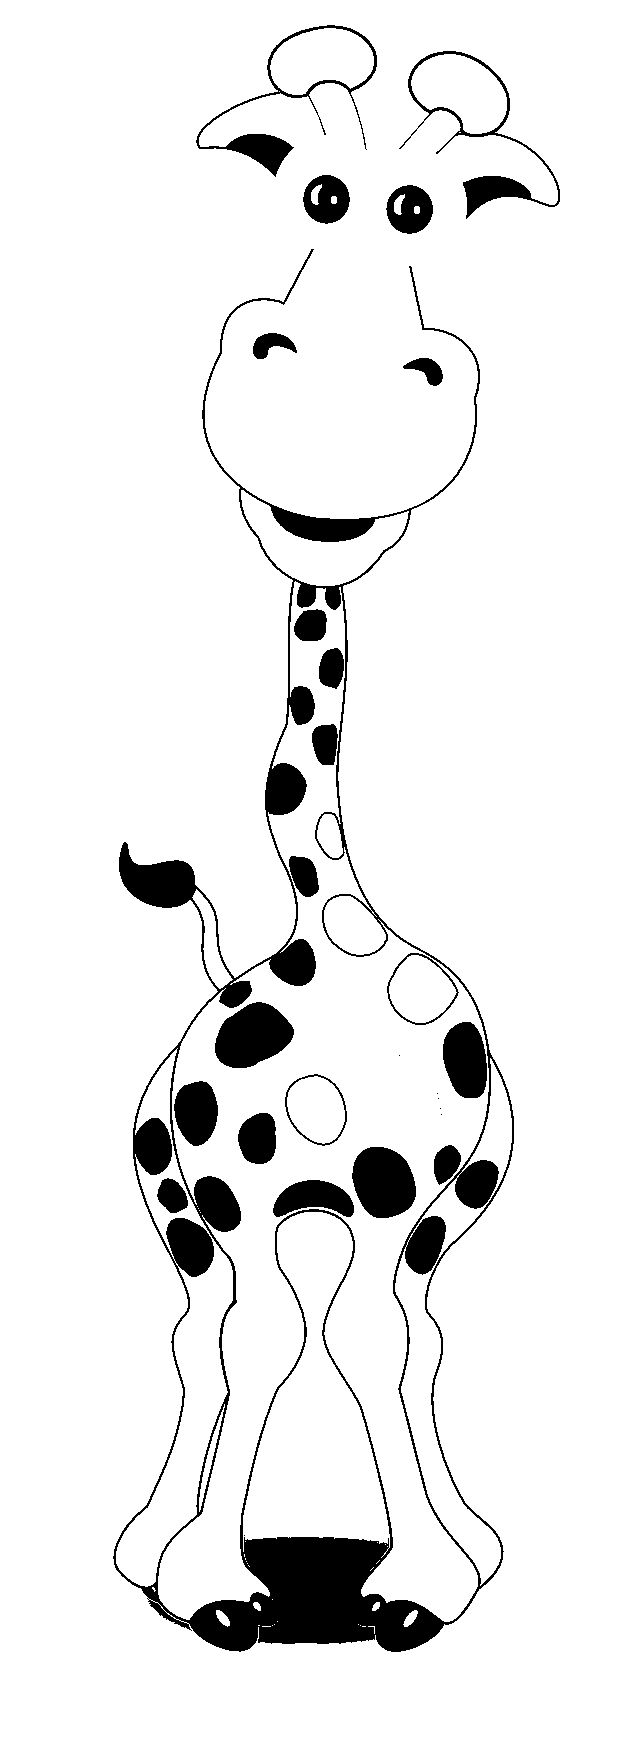 Página para colorear de jirafa de estilo de dibujos animados humorística